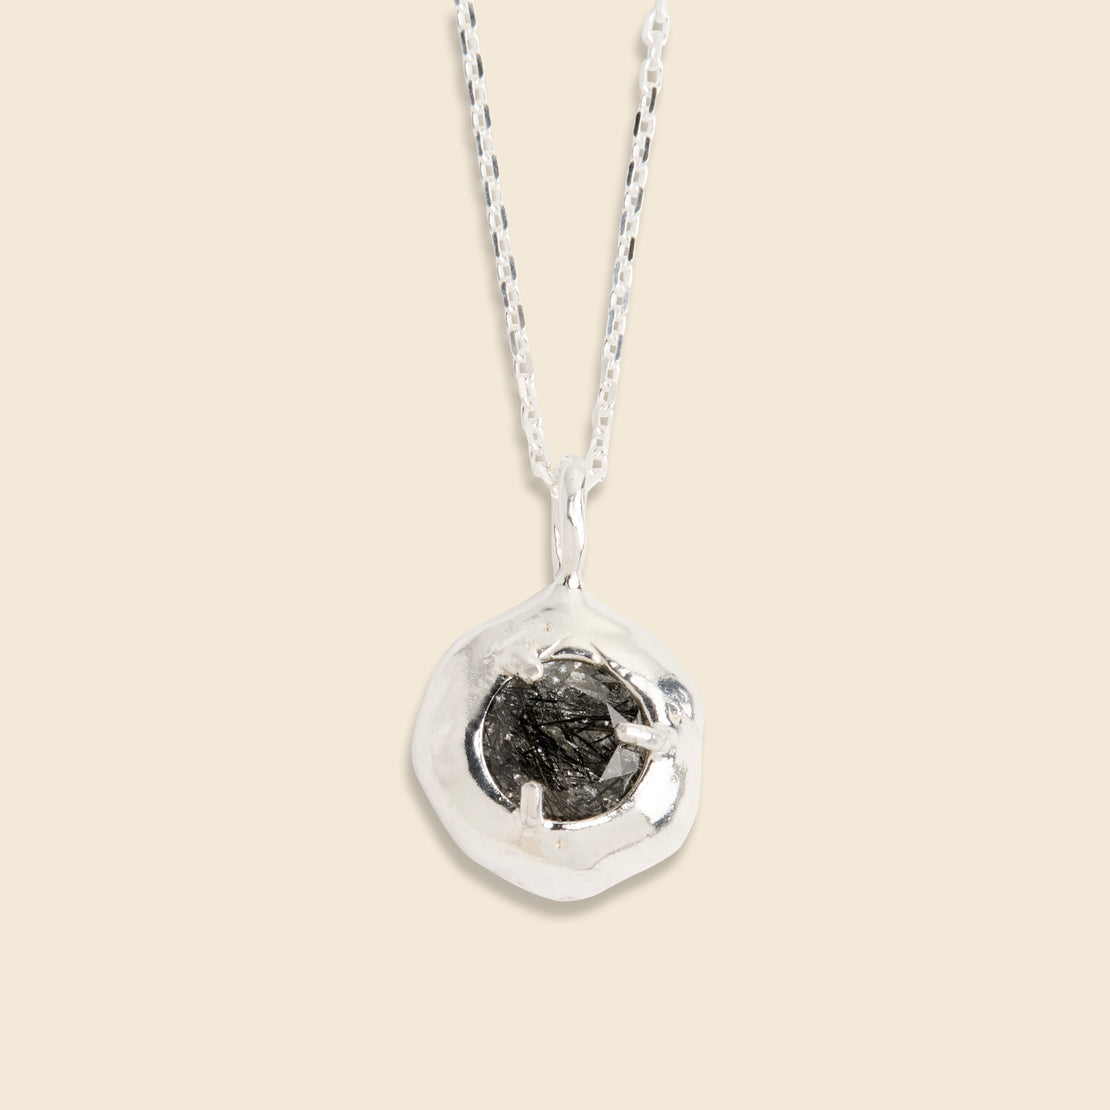 Amanda Hunt Keeper Necklace - Silver/Black Quartz